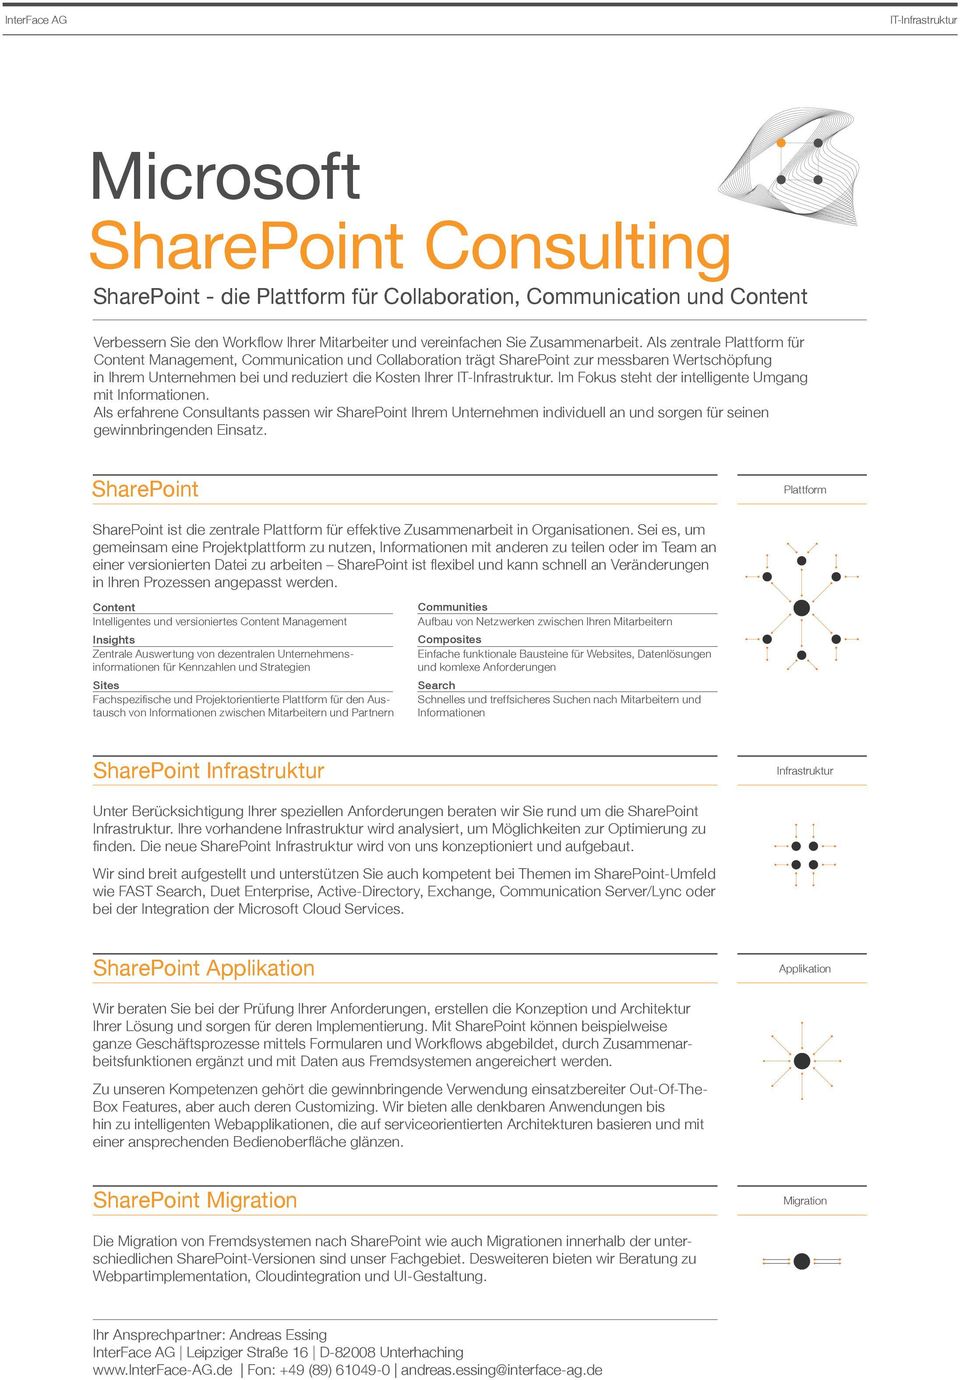 Im Fokus steht der intelligente Umgang mit Informationen. Als erfahrene Consultants passen wir SharePoint Ihrem Unternehmen individuell an und sorgen für seinen gewinnbringenden Einsatz.